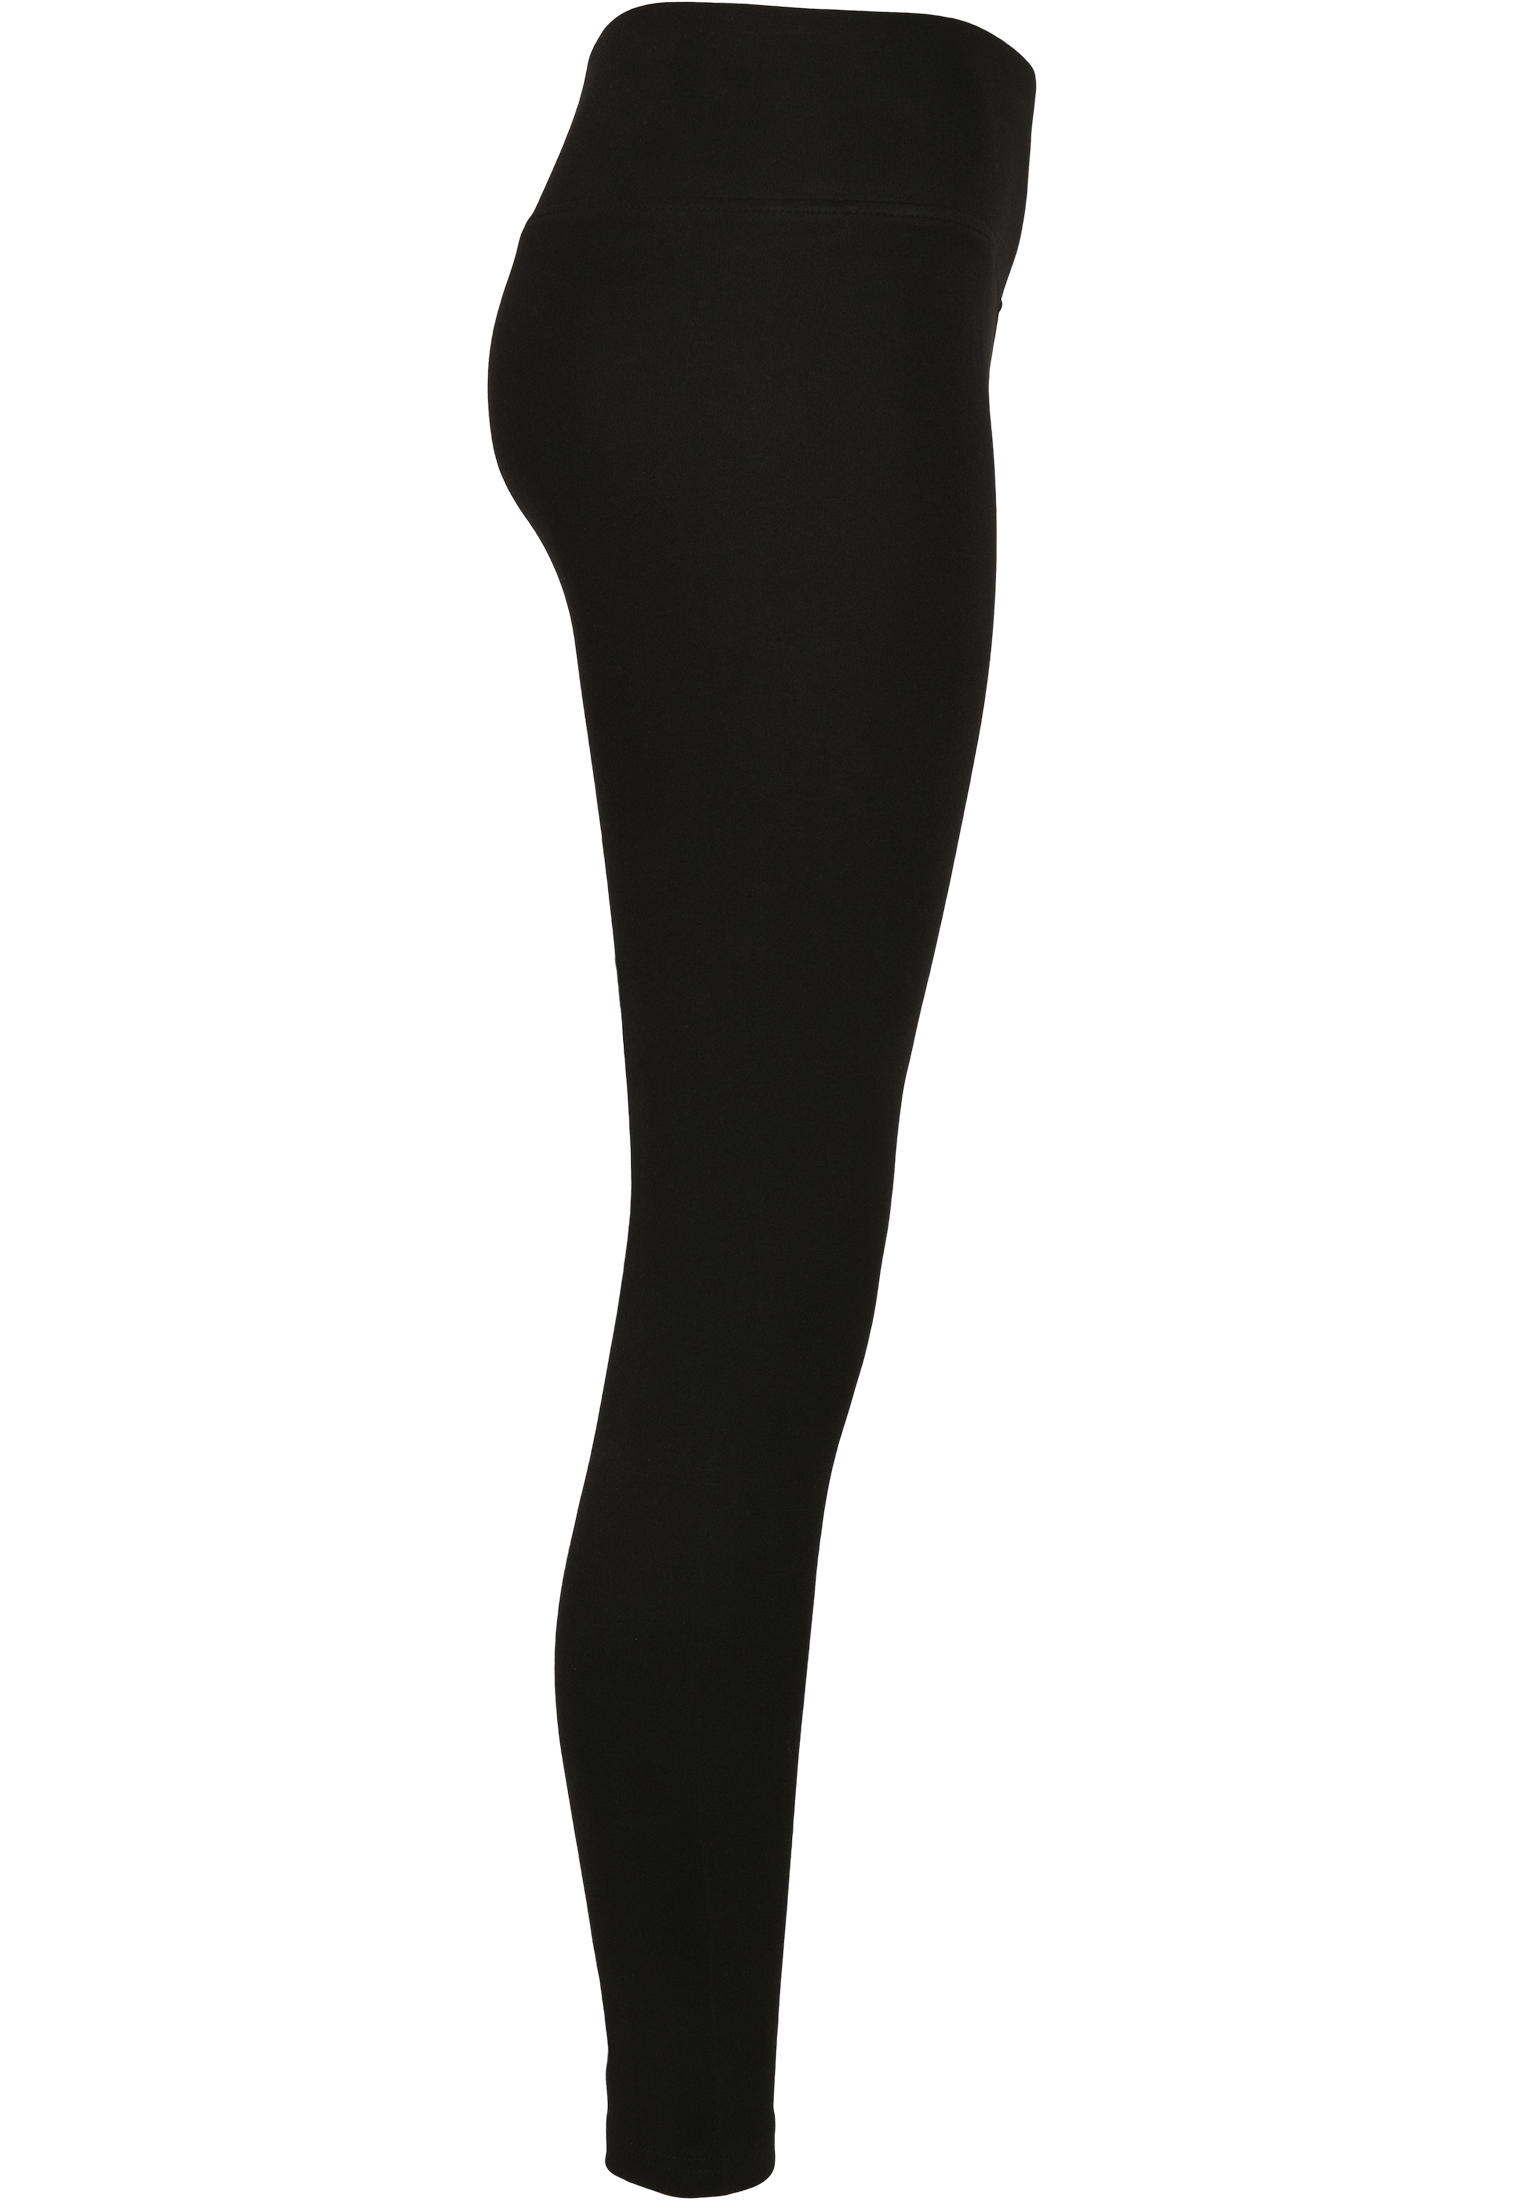 Curvy Ladies High Waist Branded Leggings in Farbe black/black